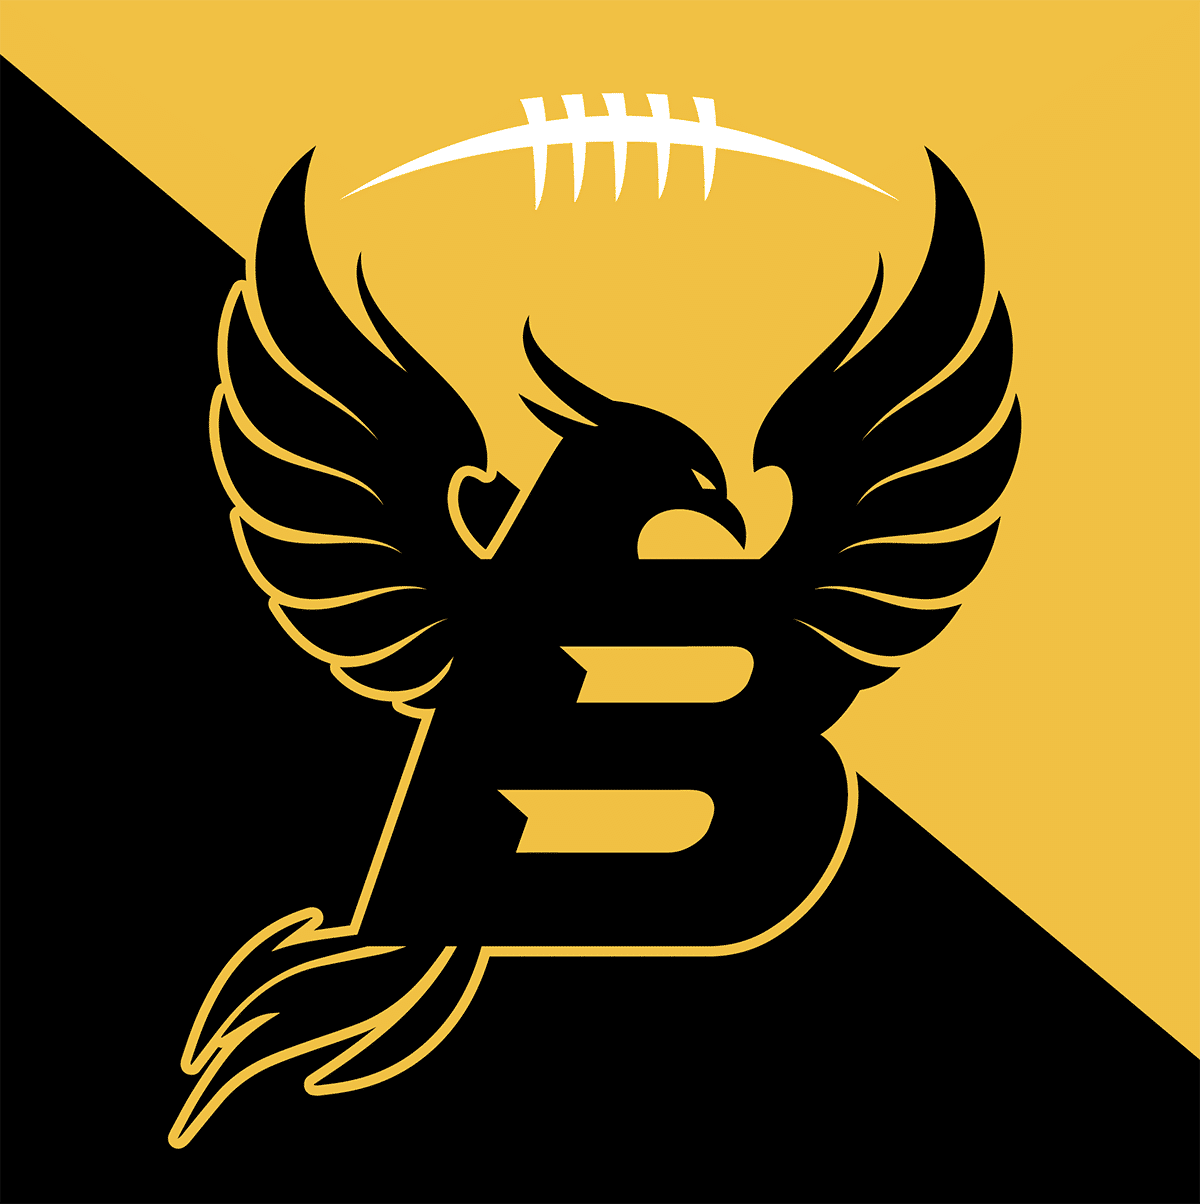 créations d'un logo pour une équipe de sport américaine